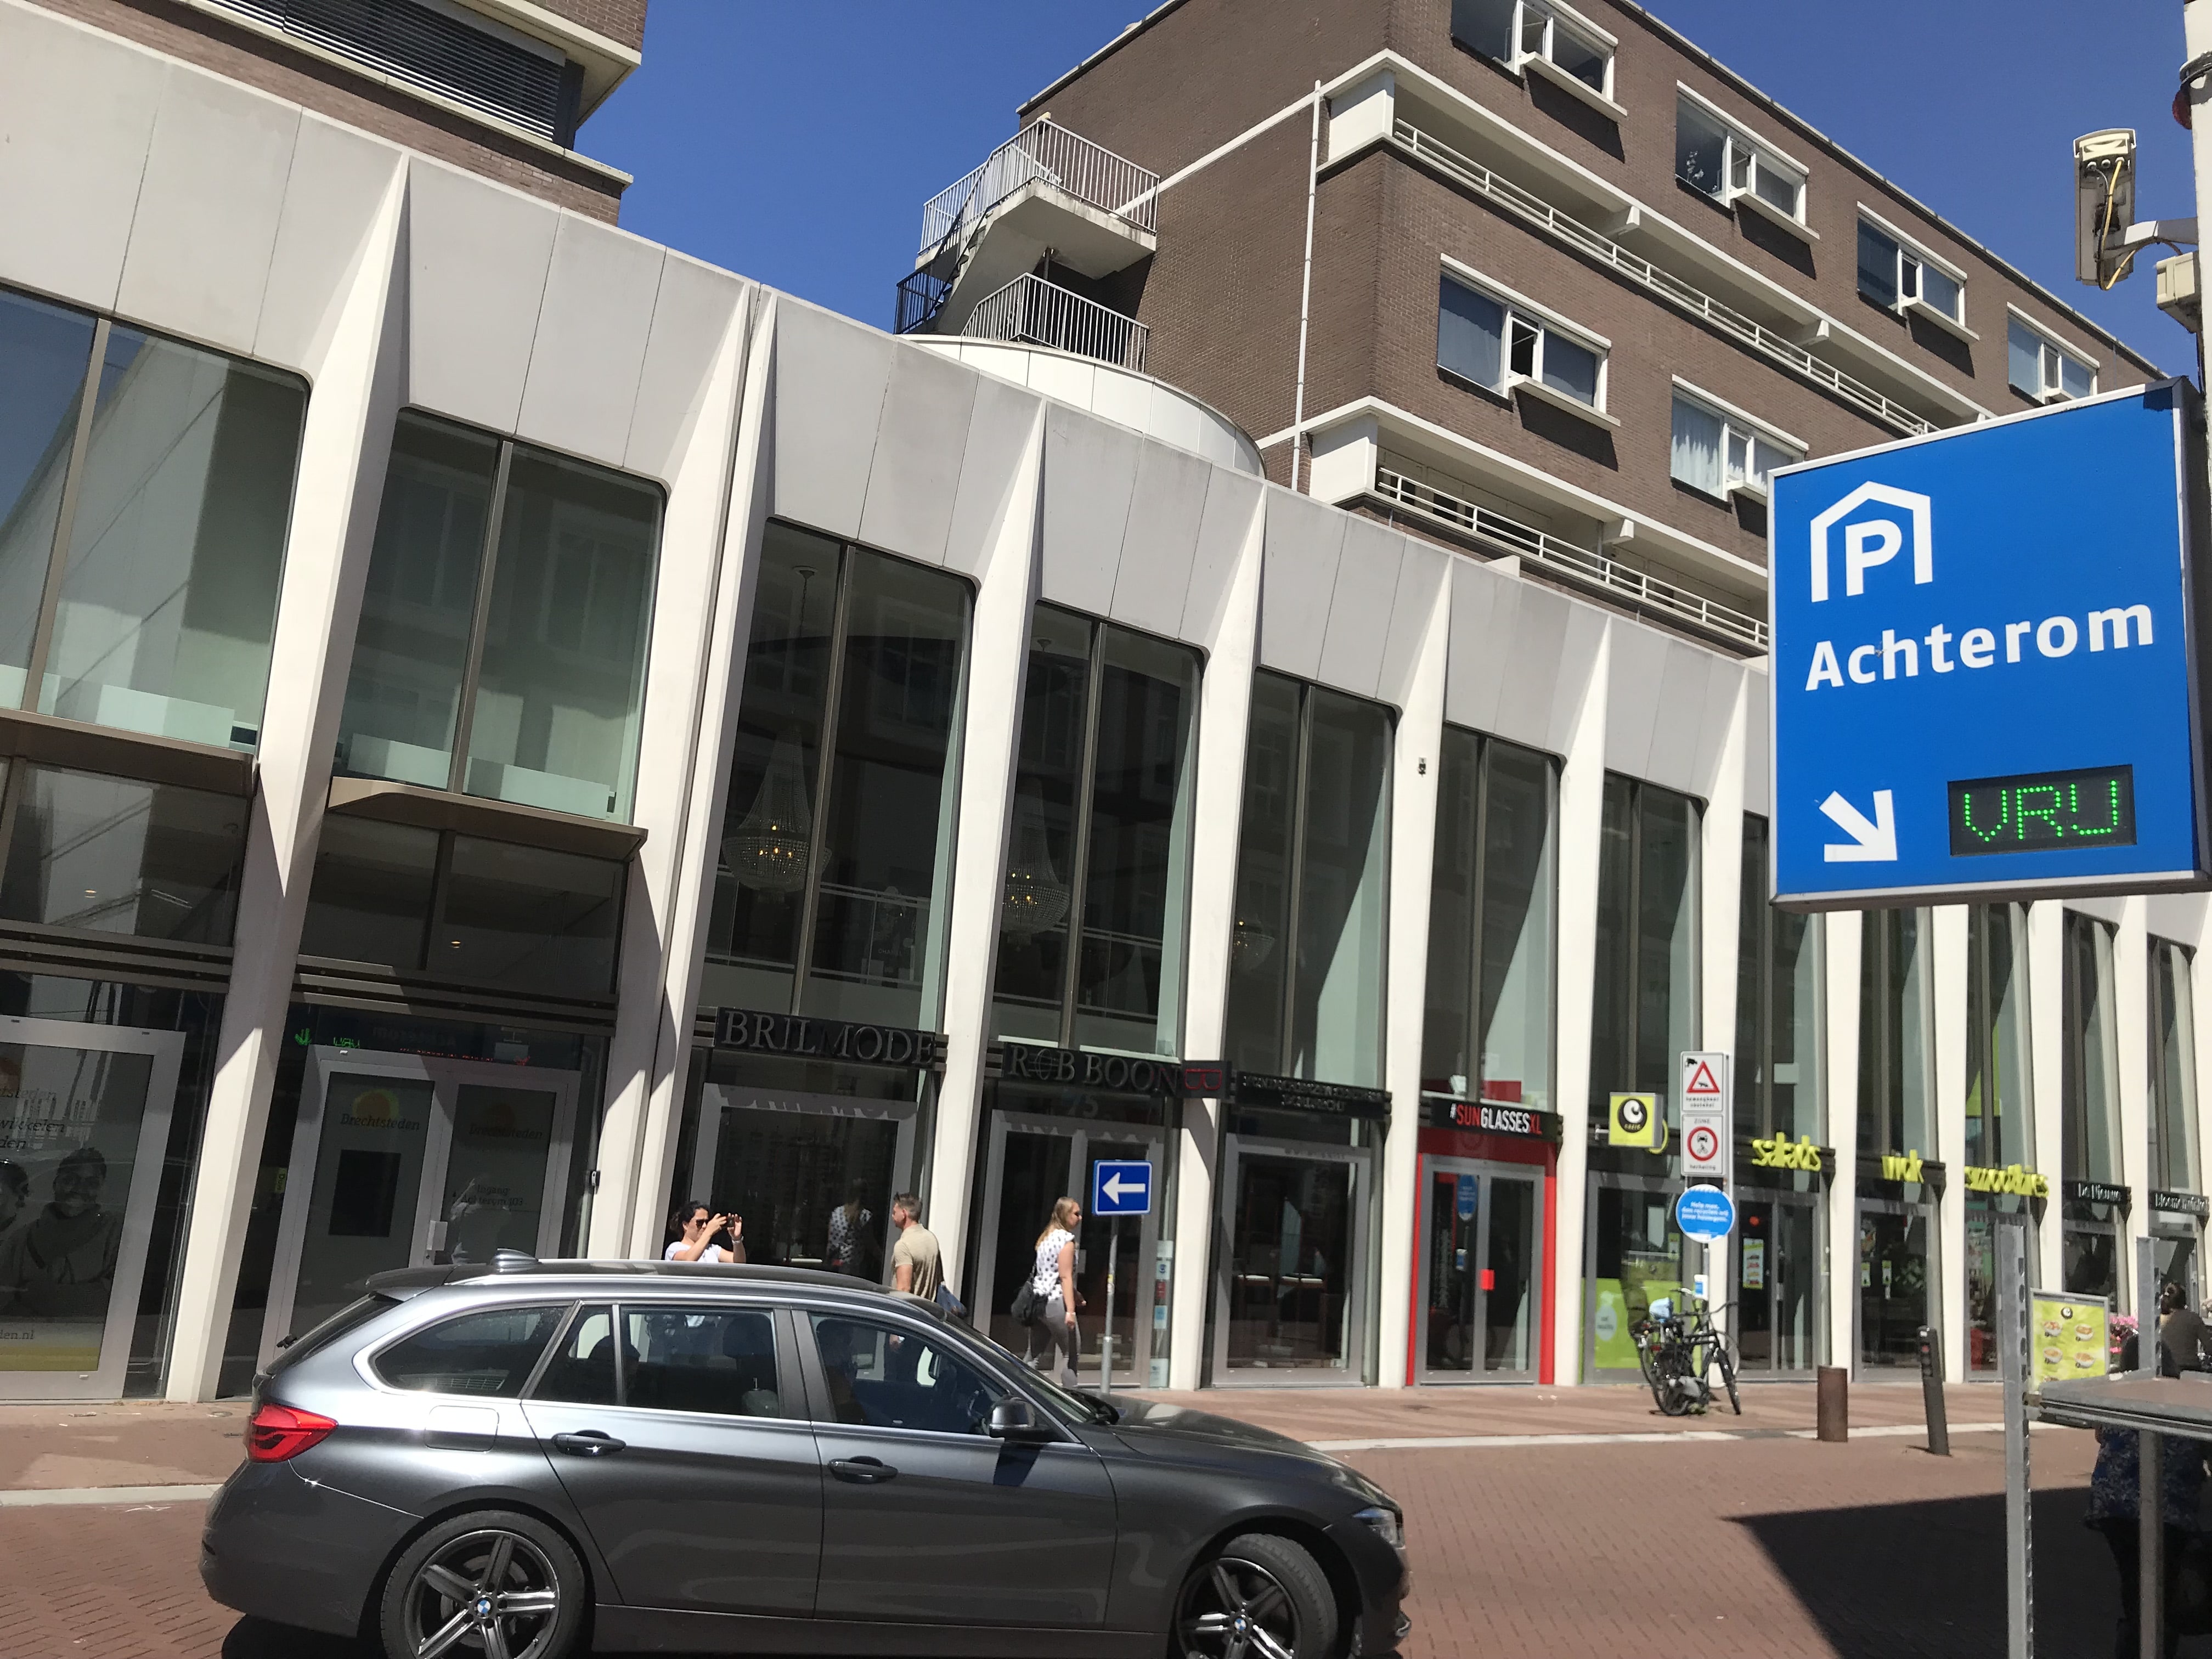 Parkeergarage Achterom parkeren auto Dordrecht